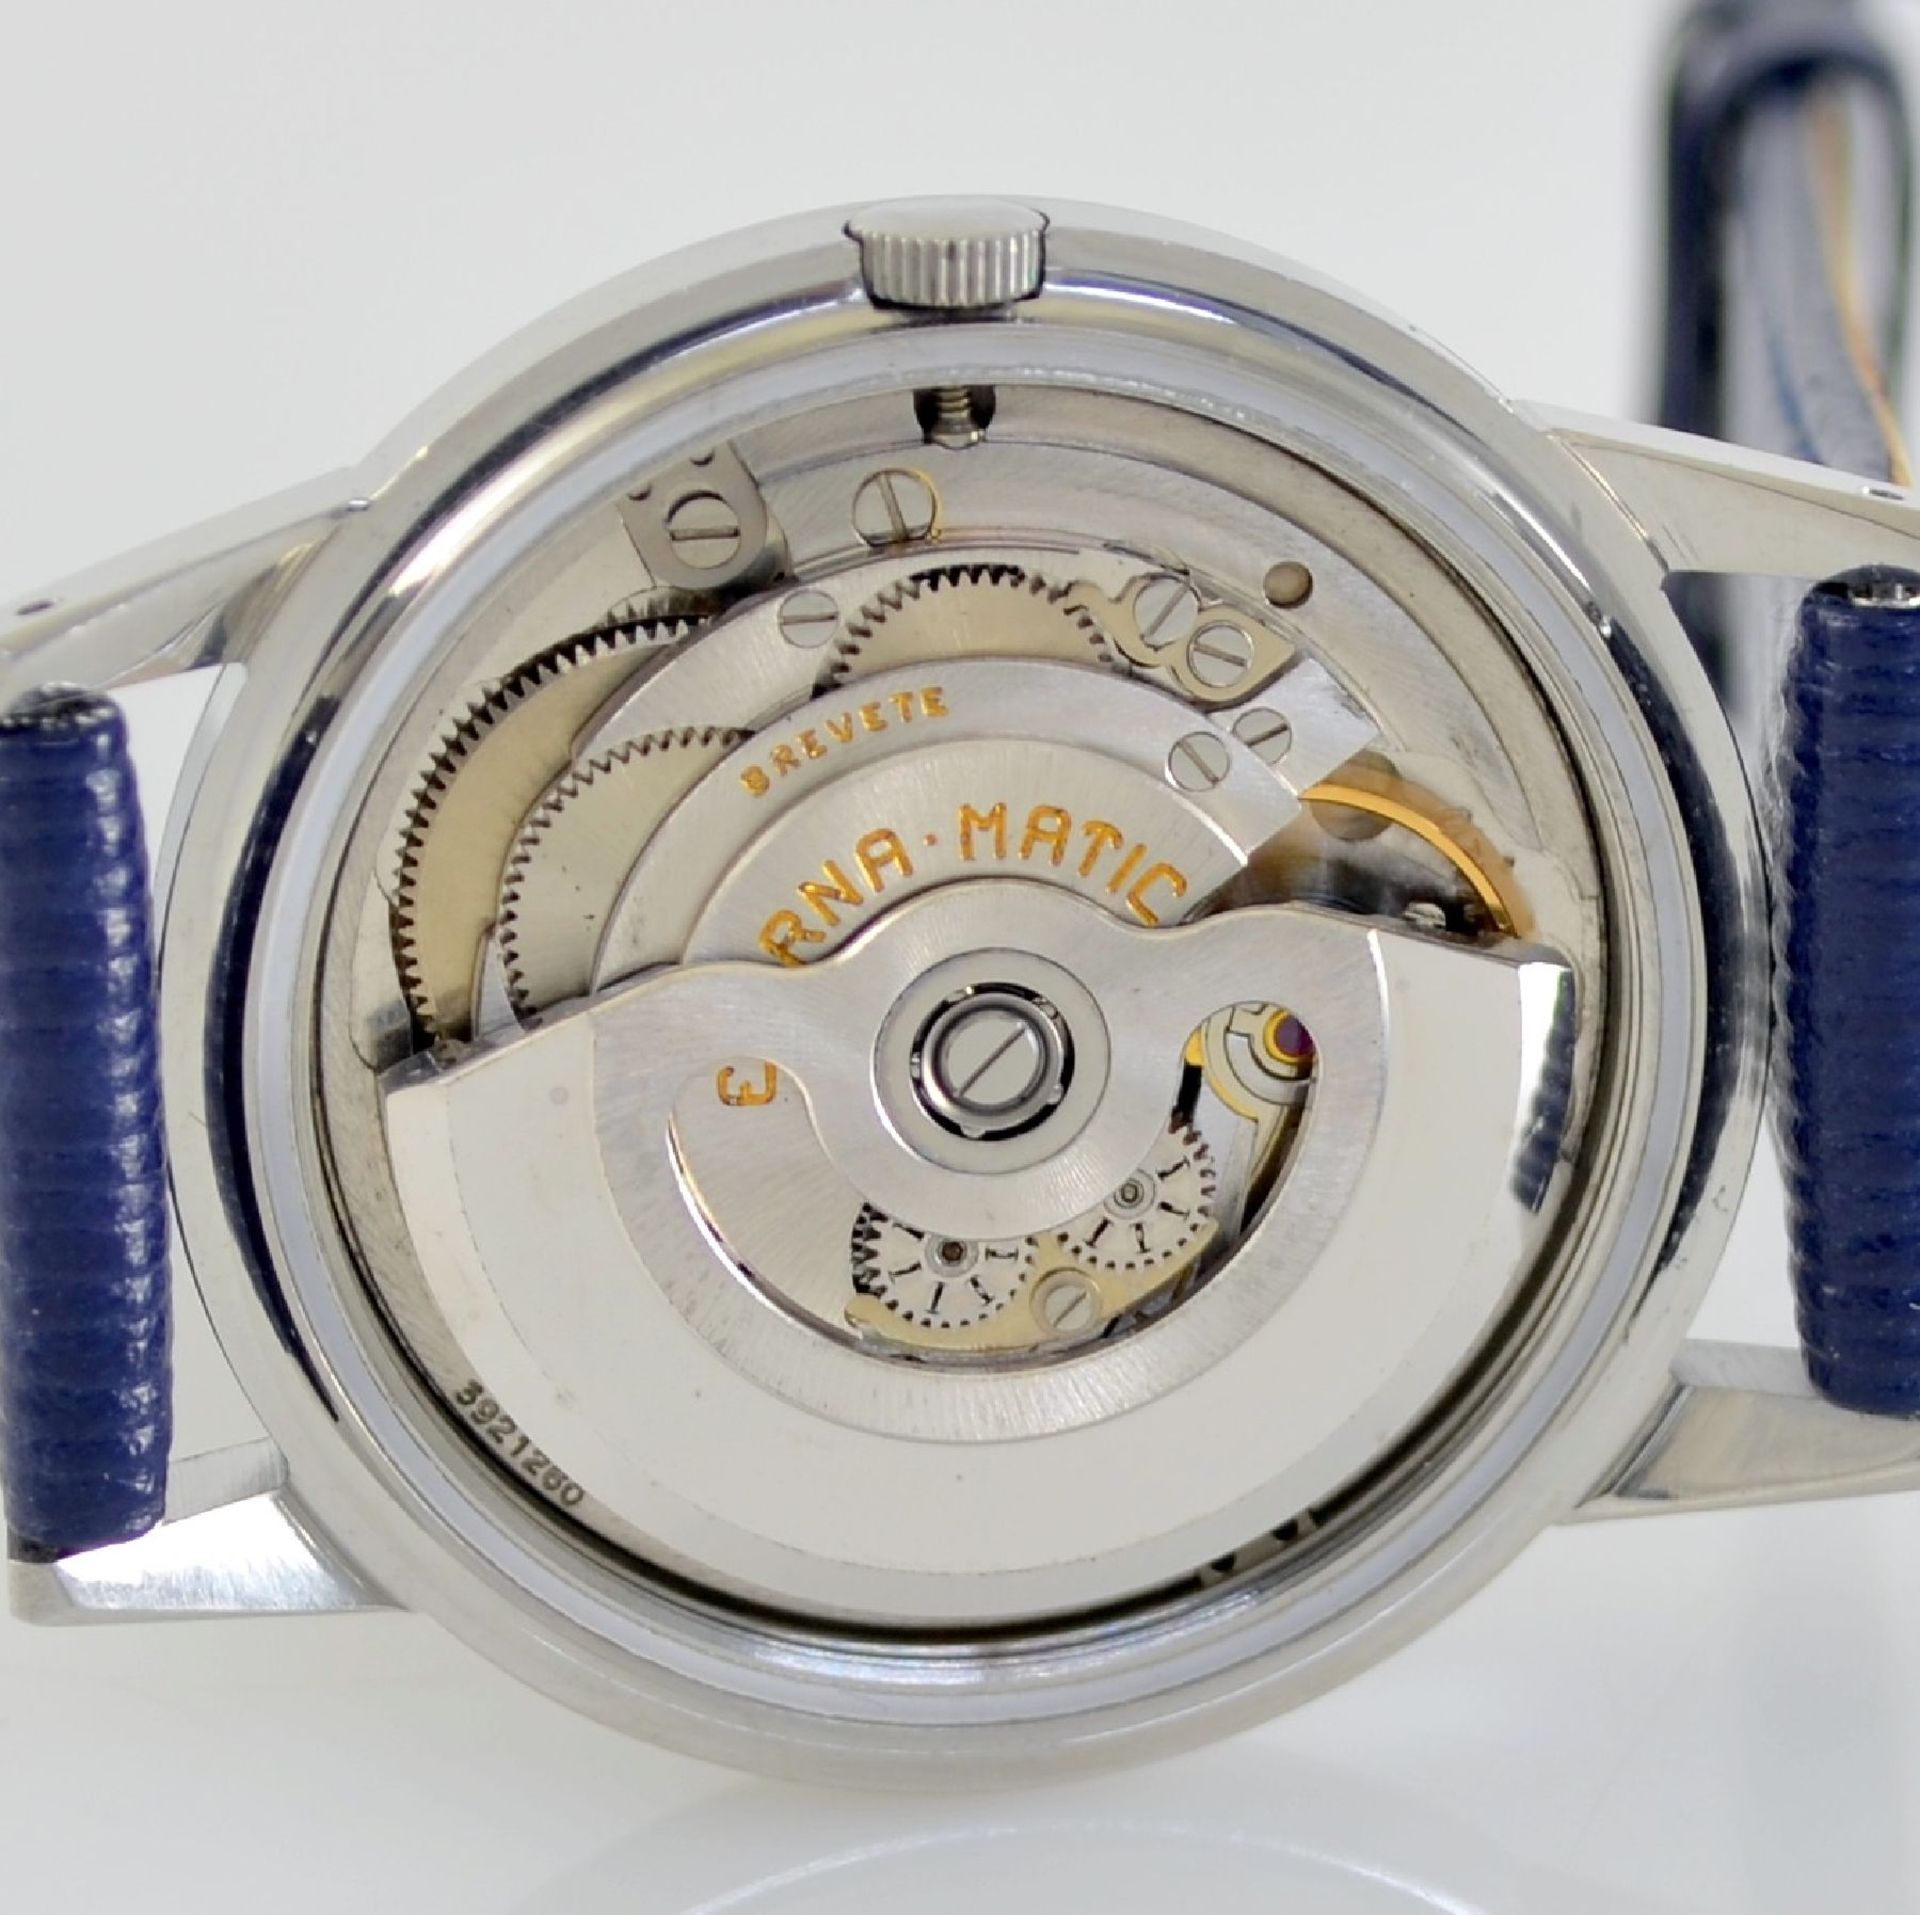 ETERNA-MATIC 2 wristwatches in steel, Switzerland around 1955, case backs screwed down, silvered - Bild 5 aus 12